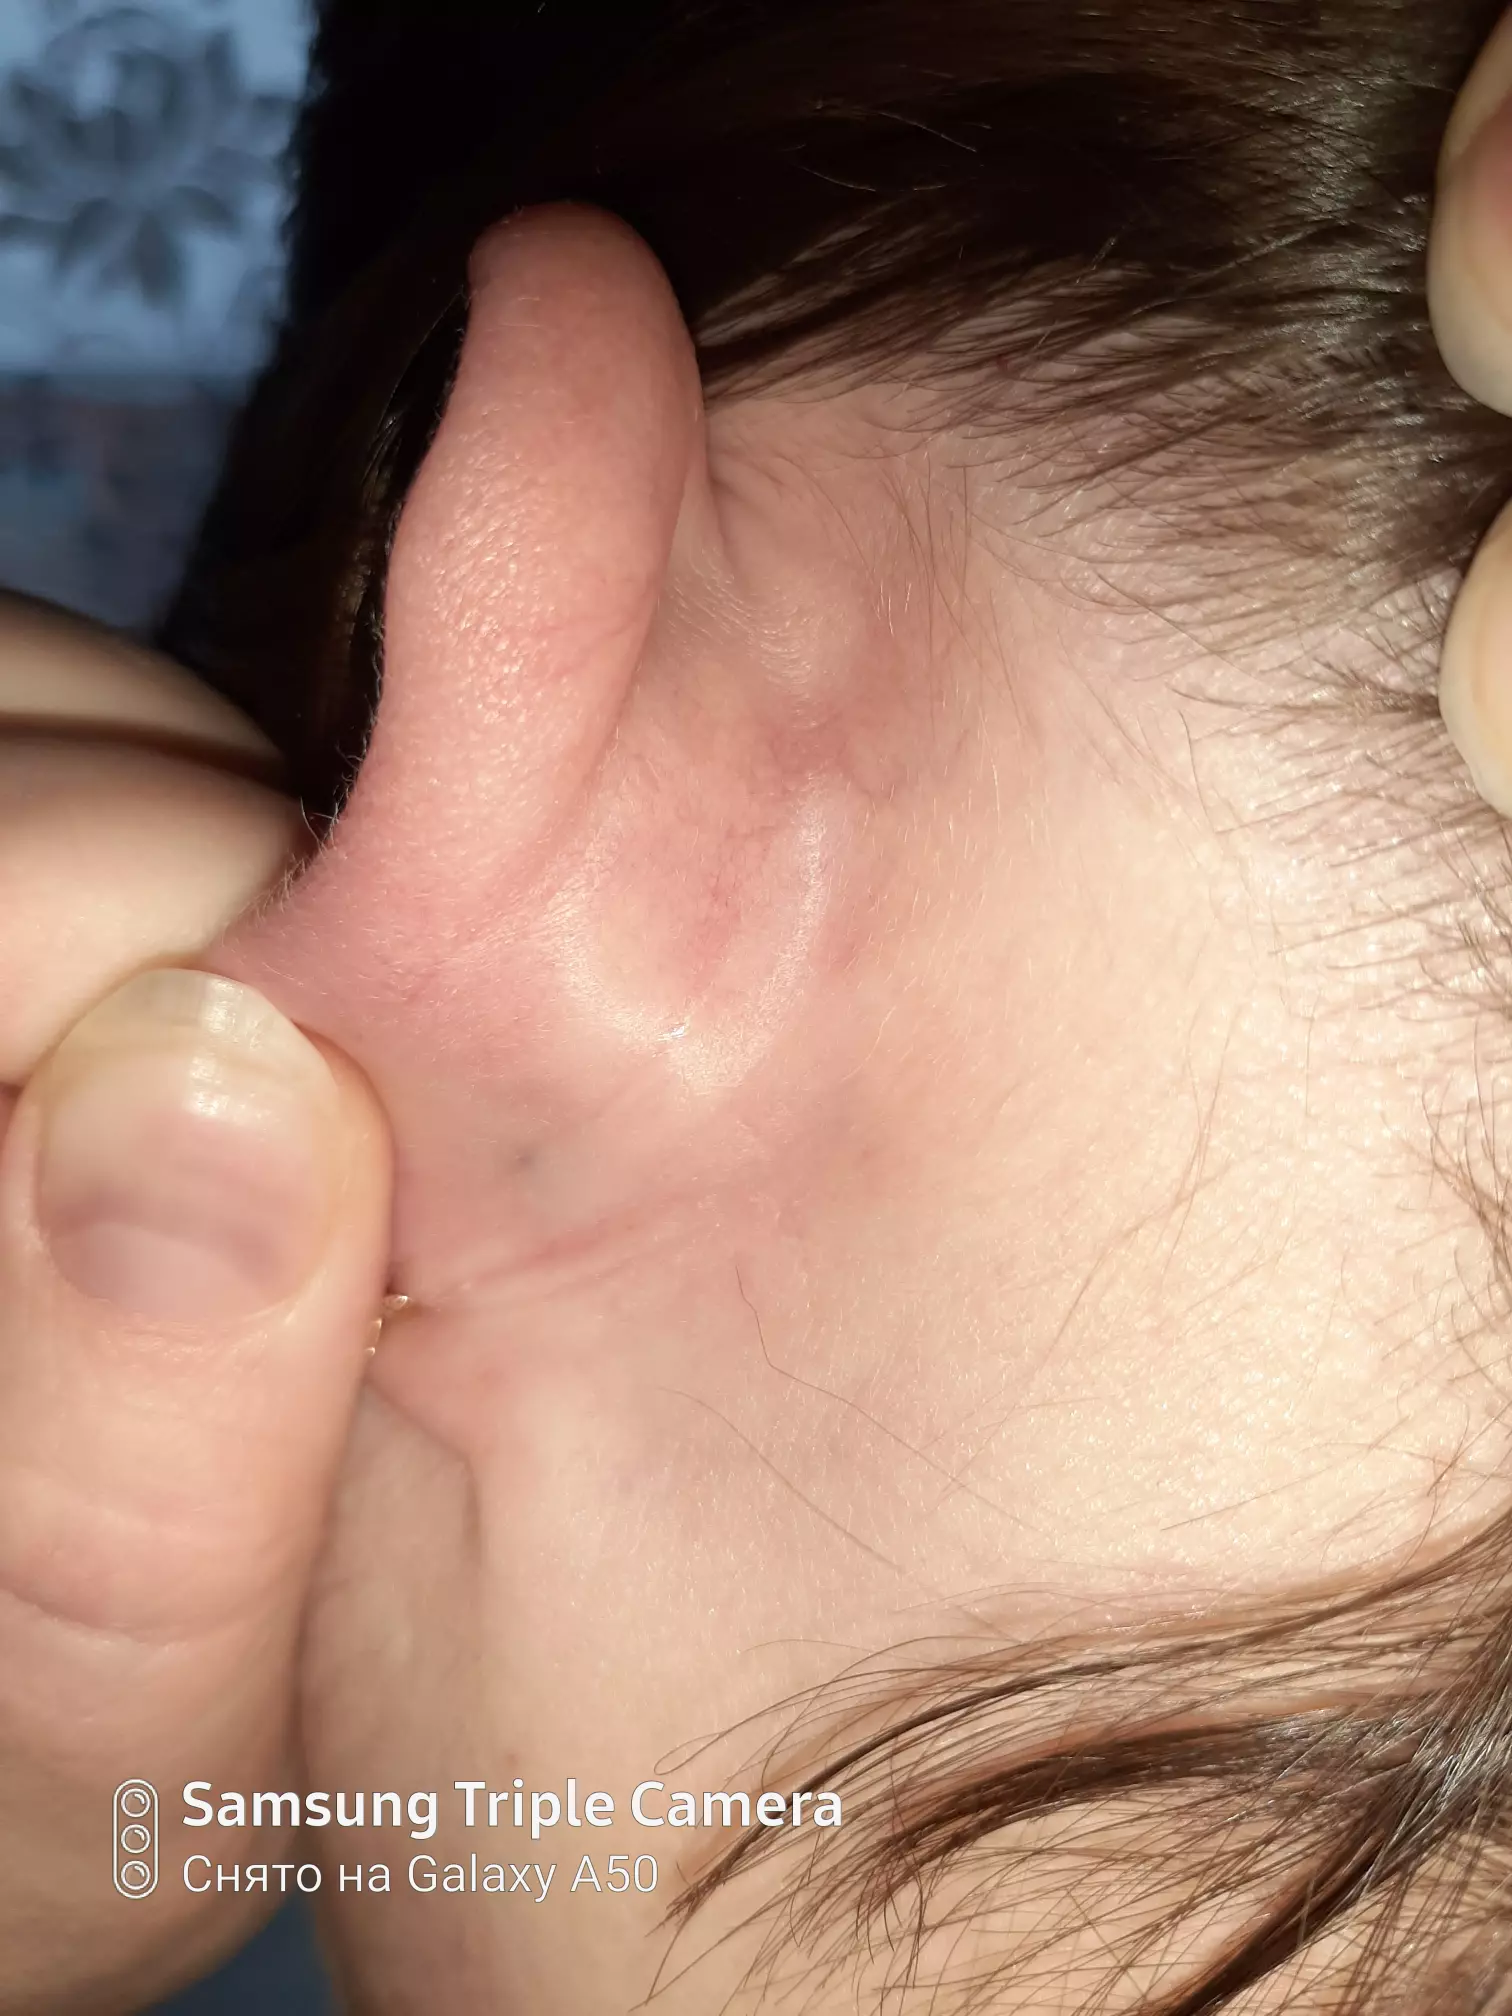 Шишка за ухом у ребенка. Что это может быть и насколько опасно